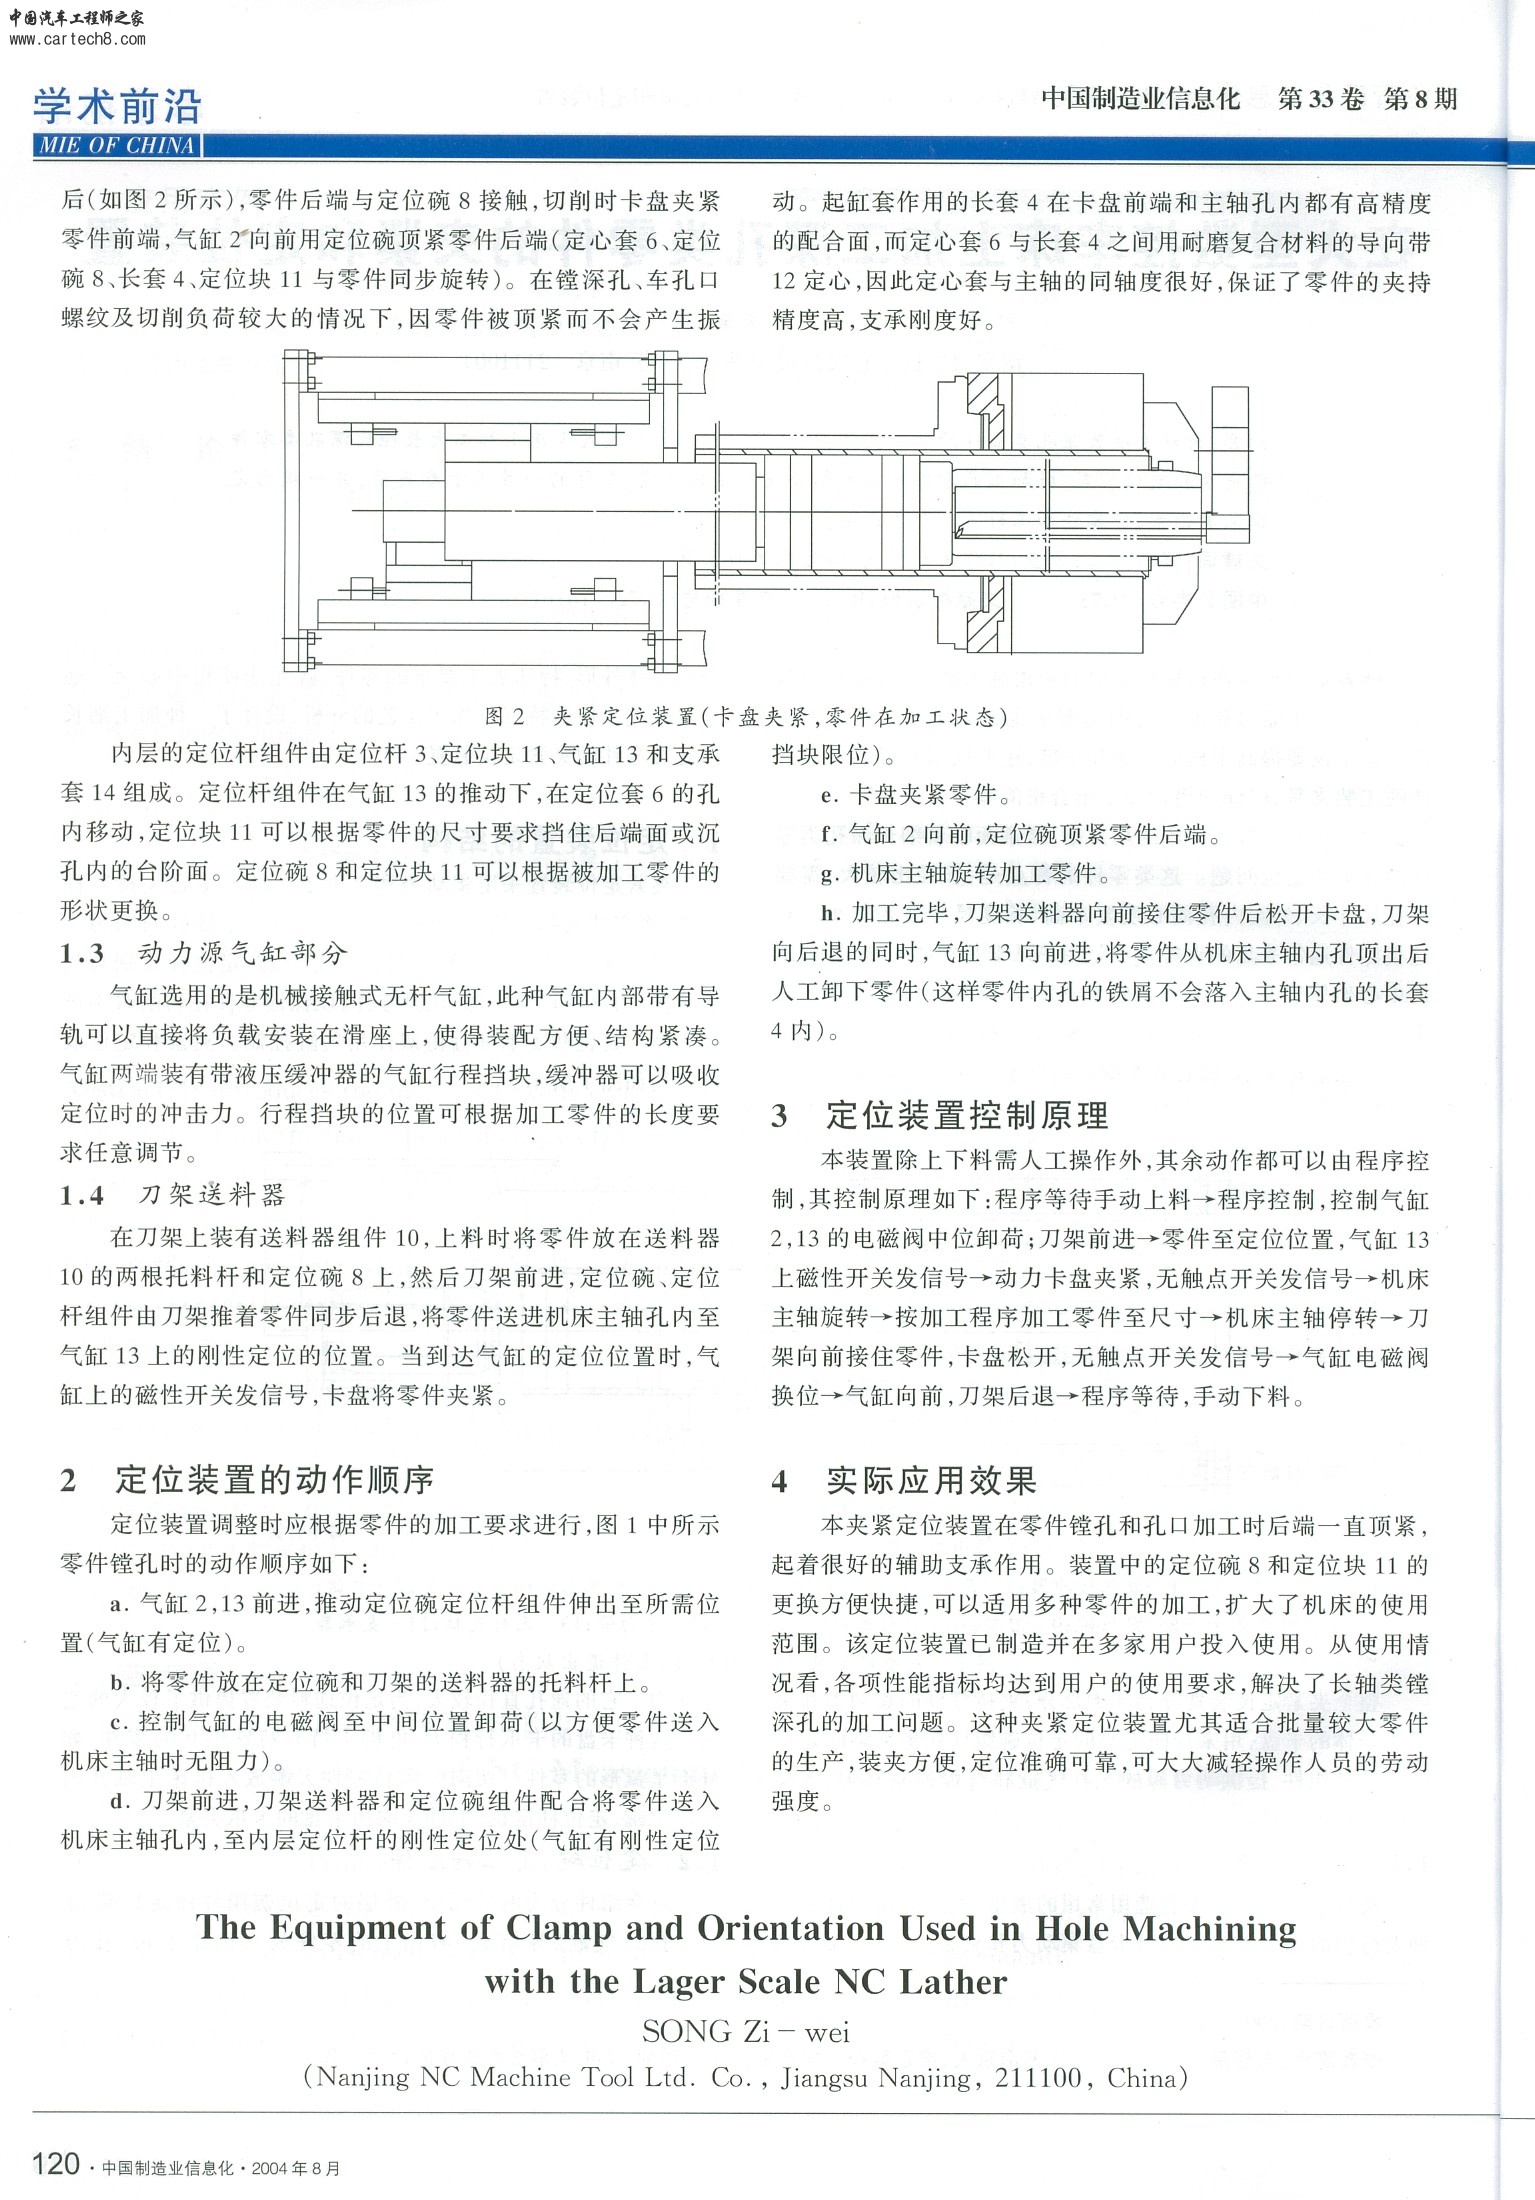 《在大型数控车床上加工深孔类零件的夹紧和定位装置》宋紫薇 中国制造业信息化 2004 (2).JPG